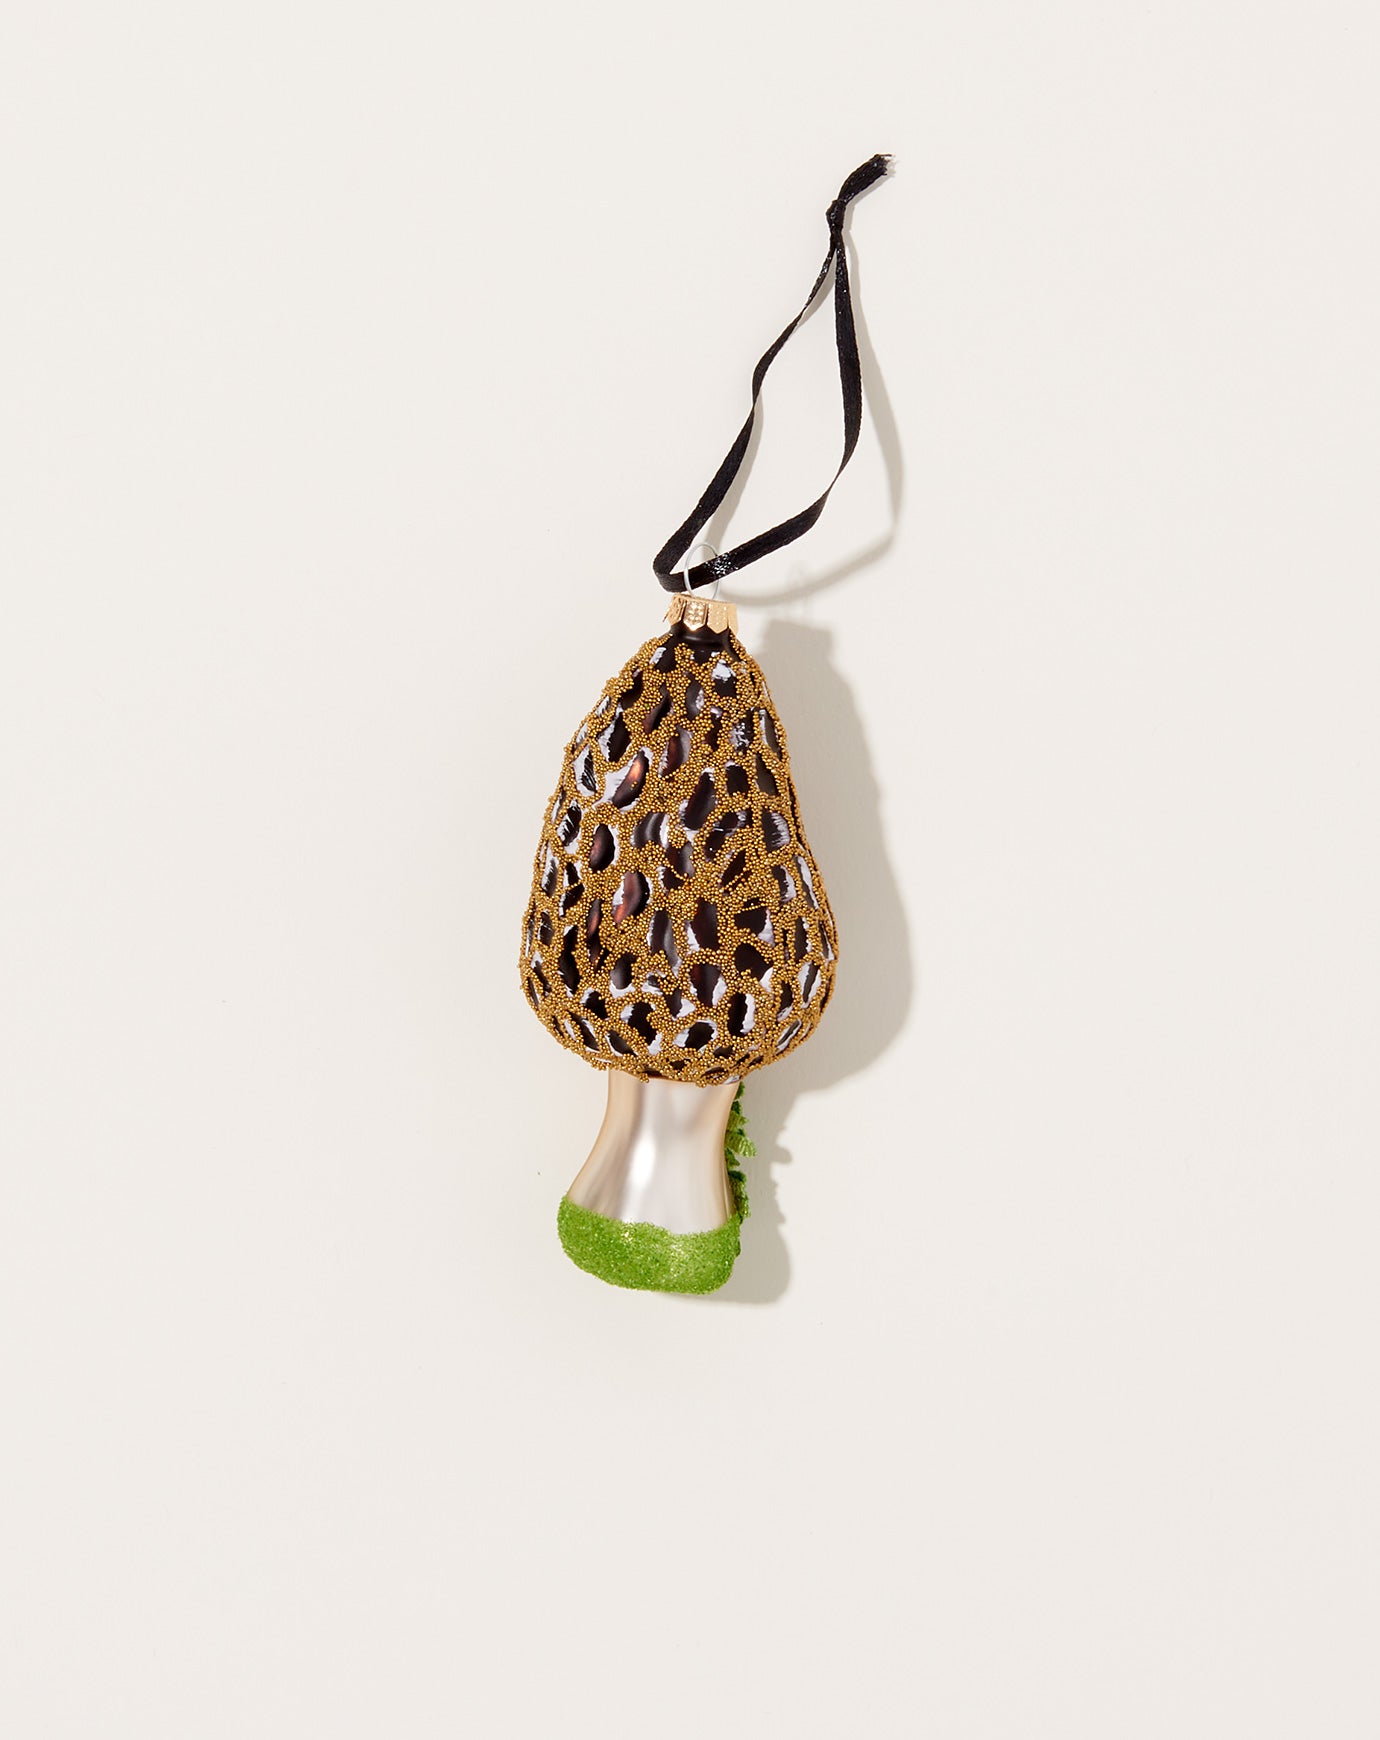 Cody Foster Morel Mushroom Ornament